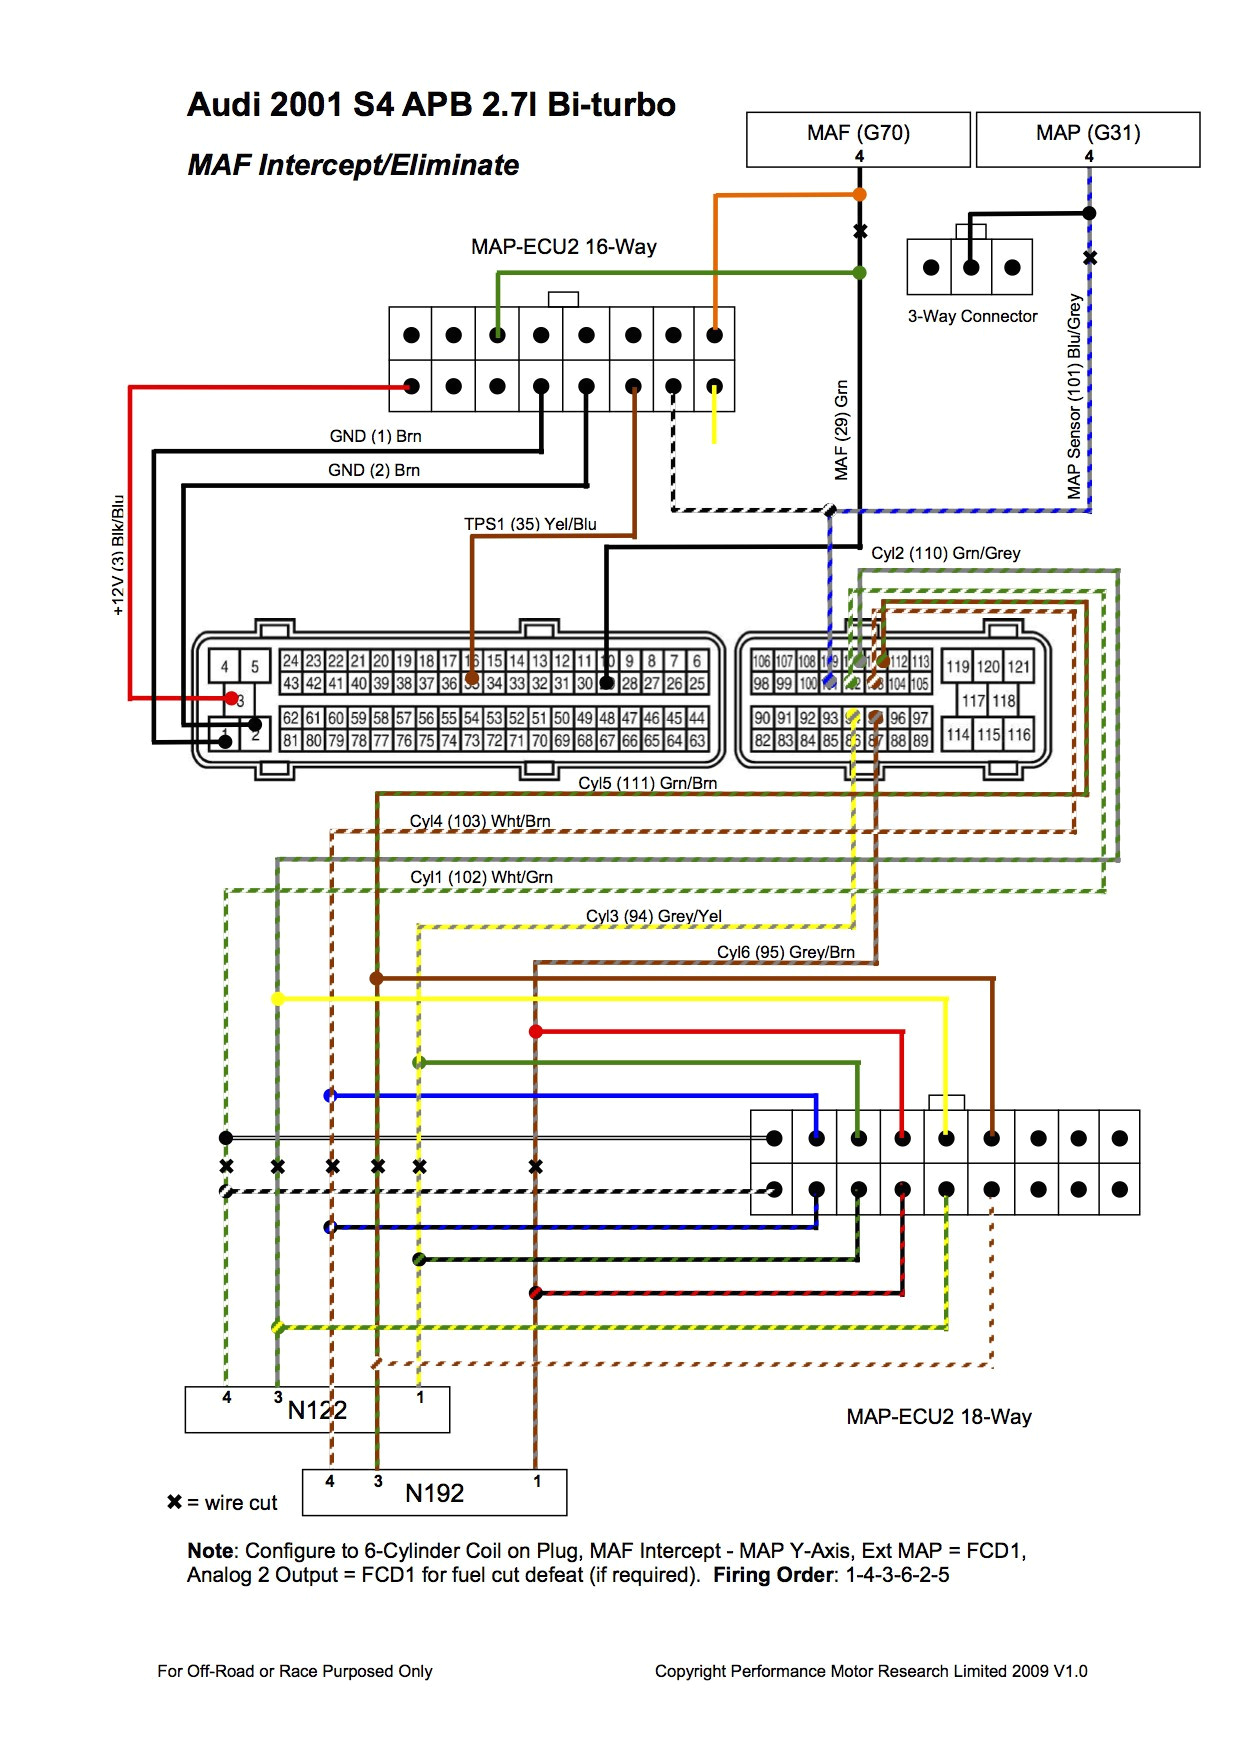 2004 lexus es330 radio wiring diagram book of 2003 audi a4 factory radio wiring diagram download wiring diagrams e280a2 of 2004 lexus es330 radio wiring diagram jpg